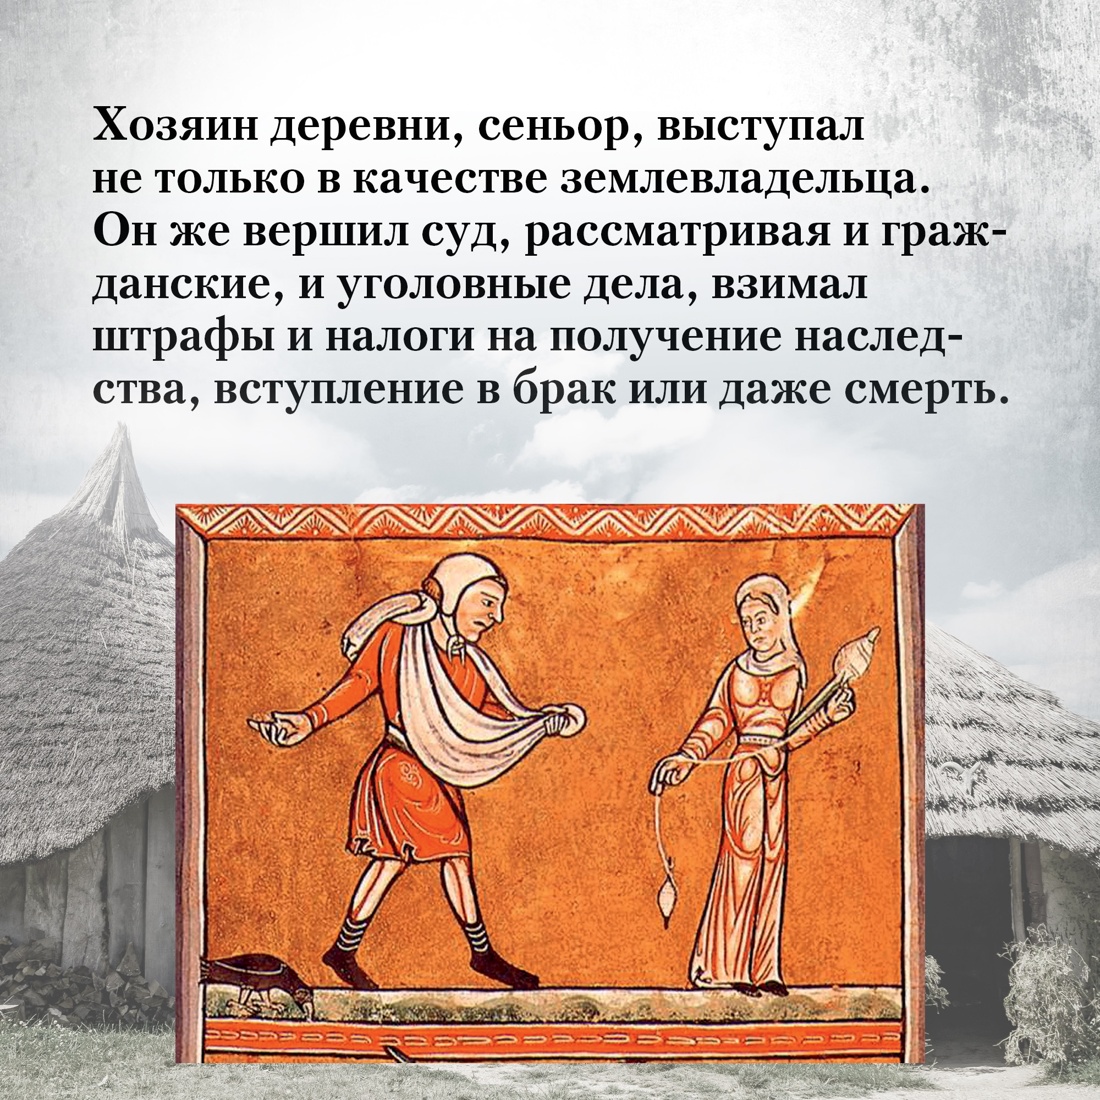 Промо материал к книге "Жизнь в средневековой деревне" №3